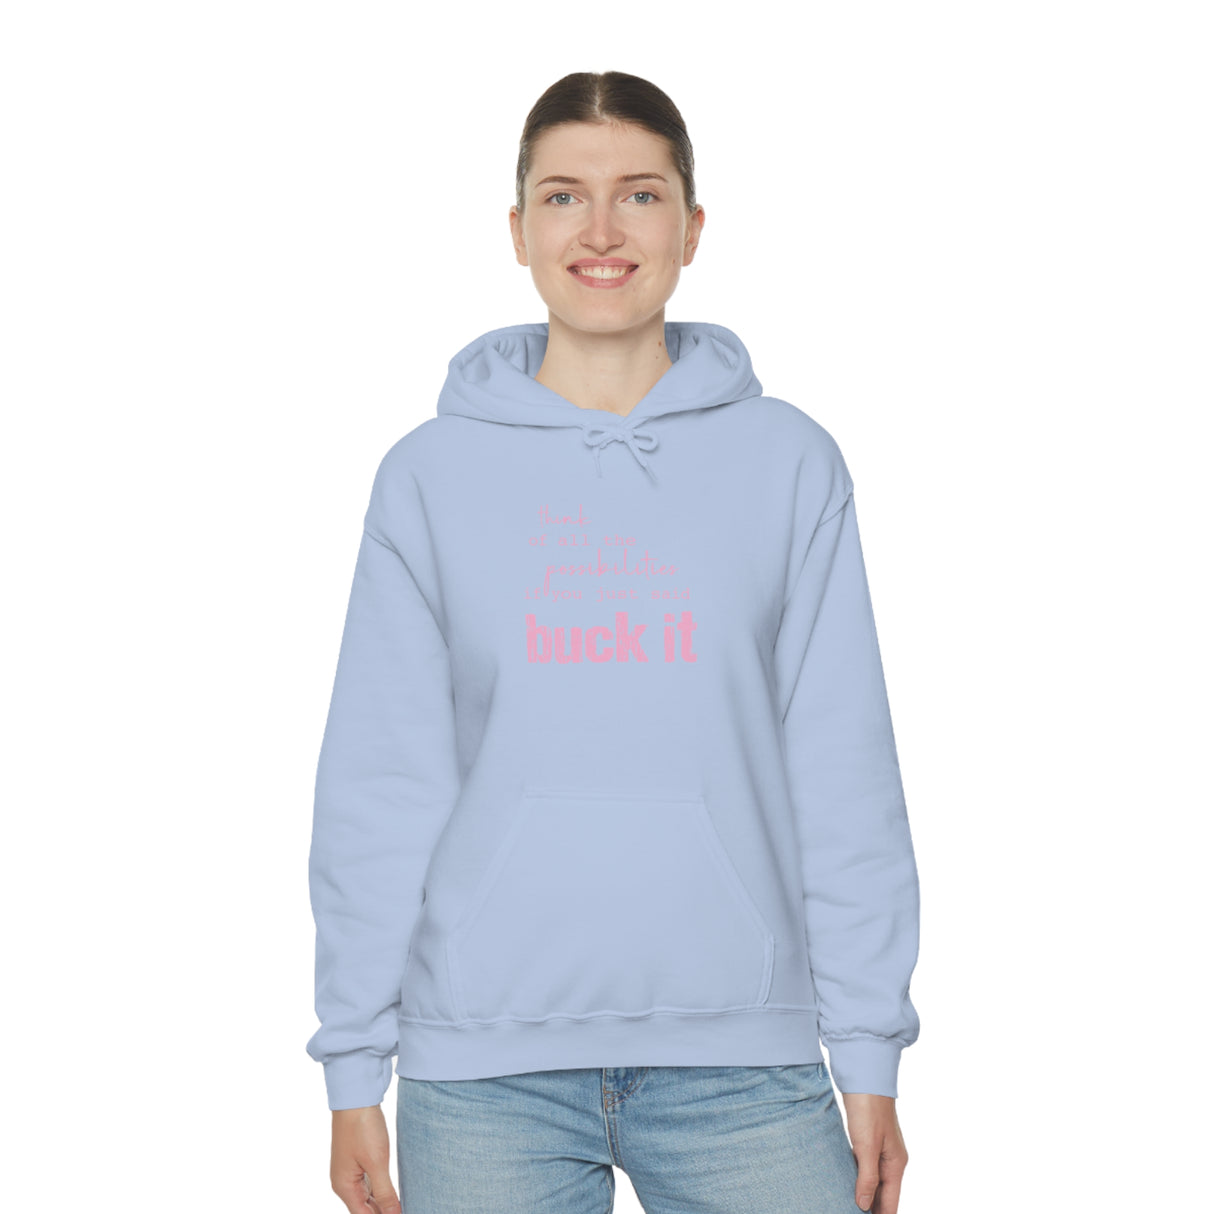 Unisex Heavy Blend™ Hooded Sweatshirt | buck it